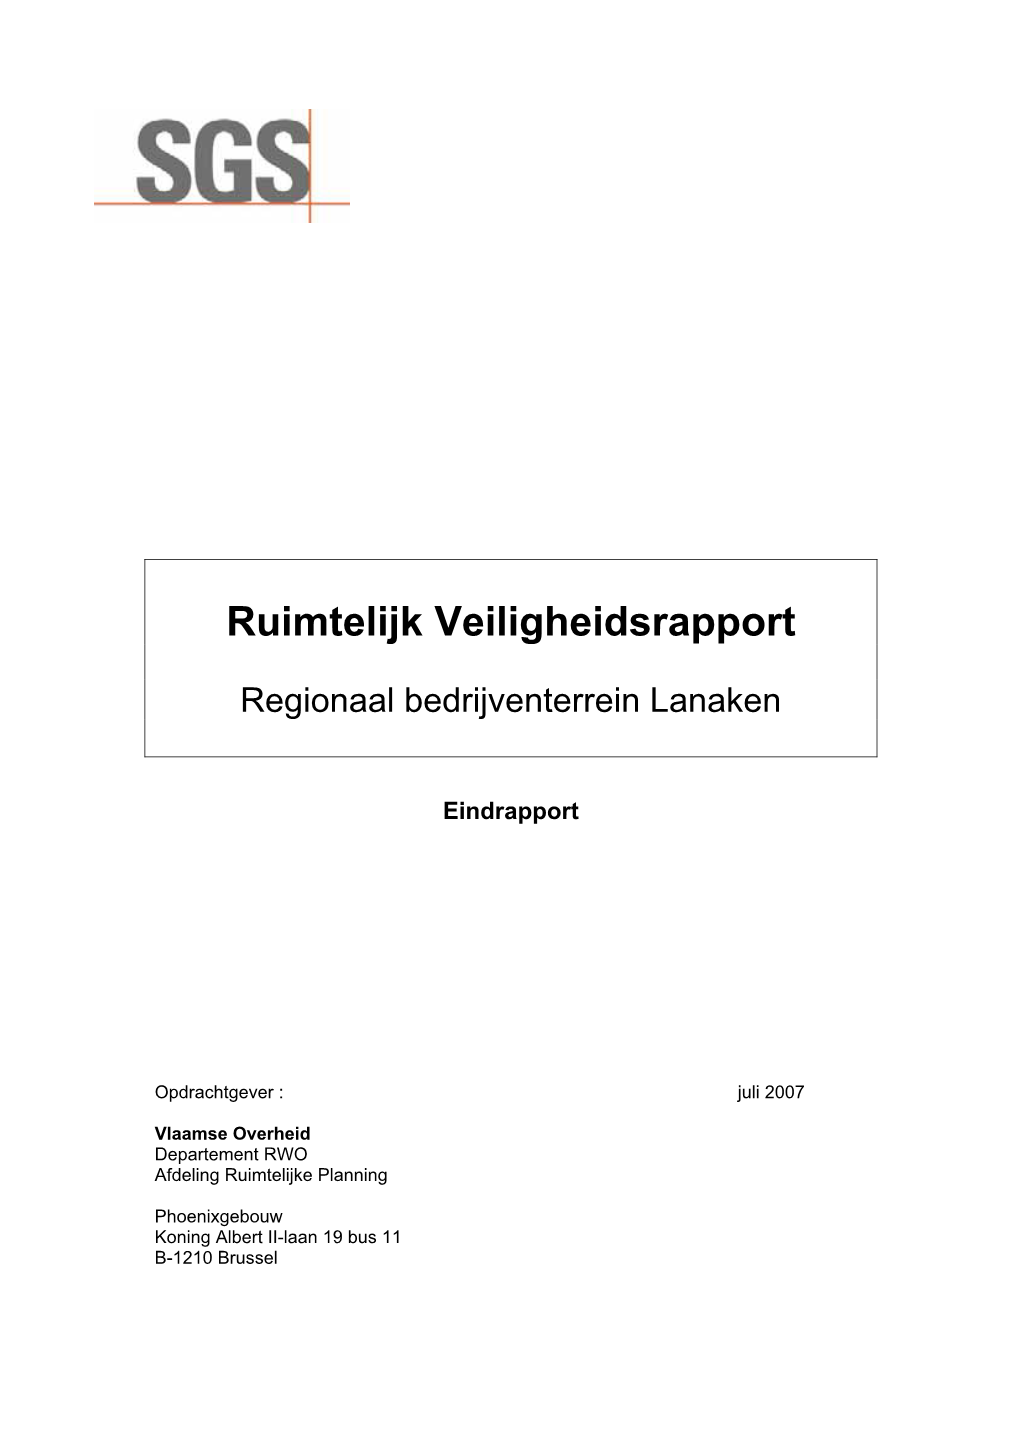 Ruimtelijk Veiligheidsrapport ENA (Regionaal Bedrijventerrein Lanaken)